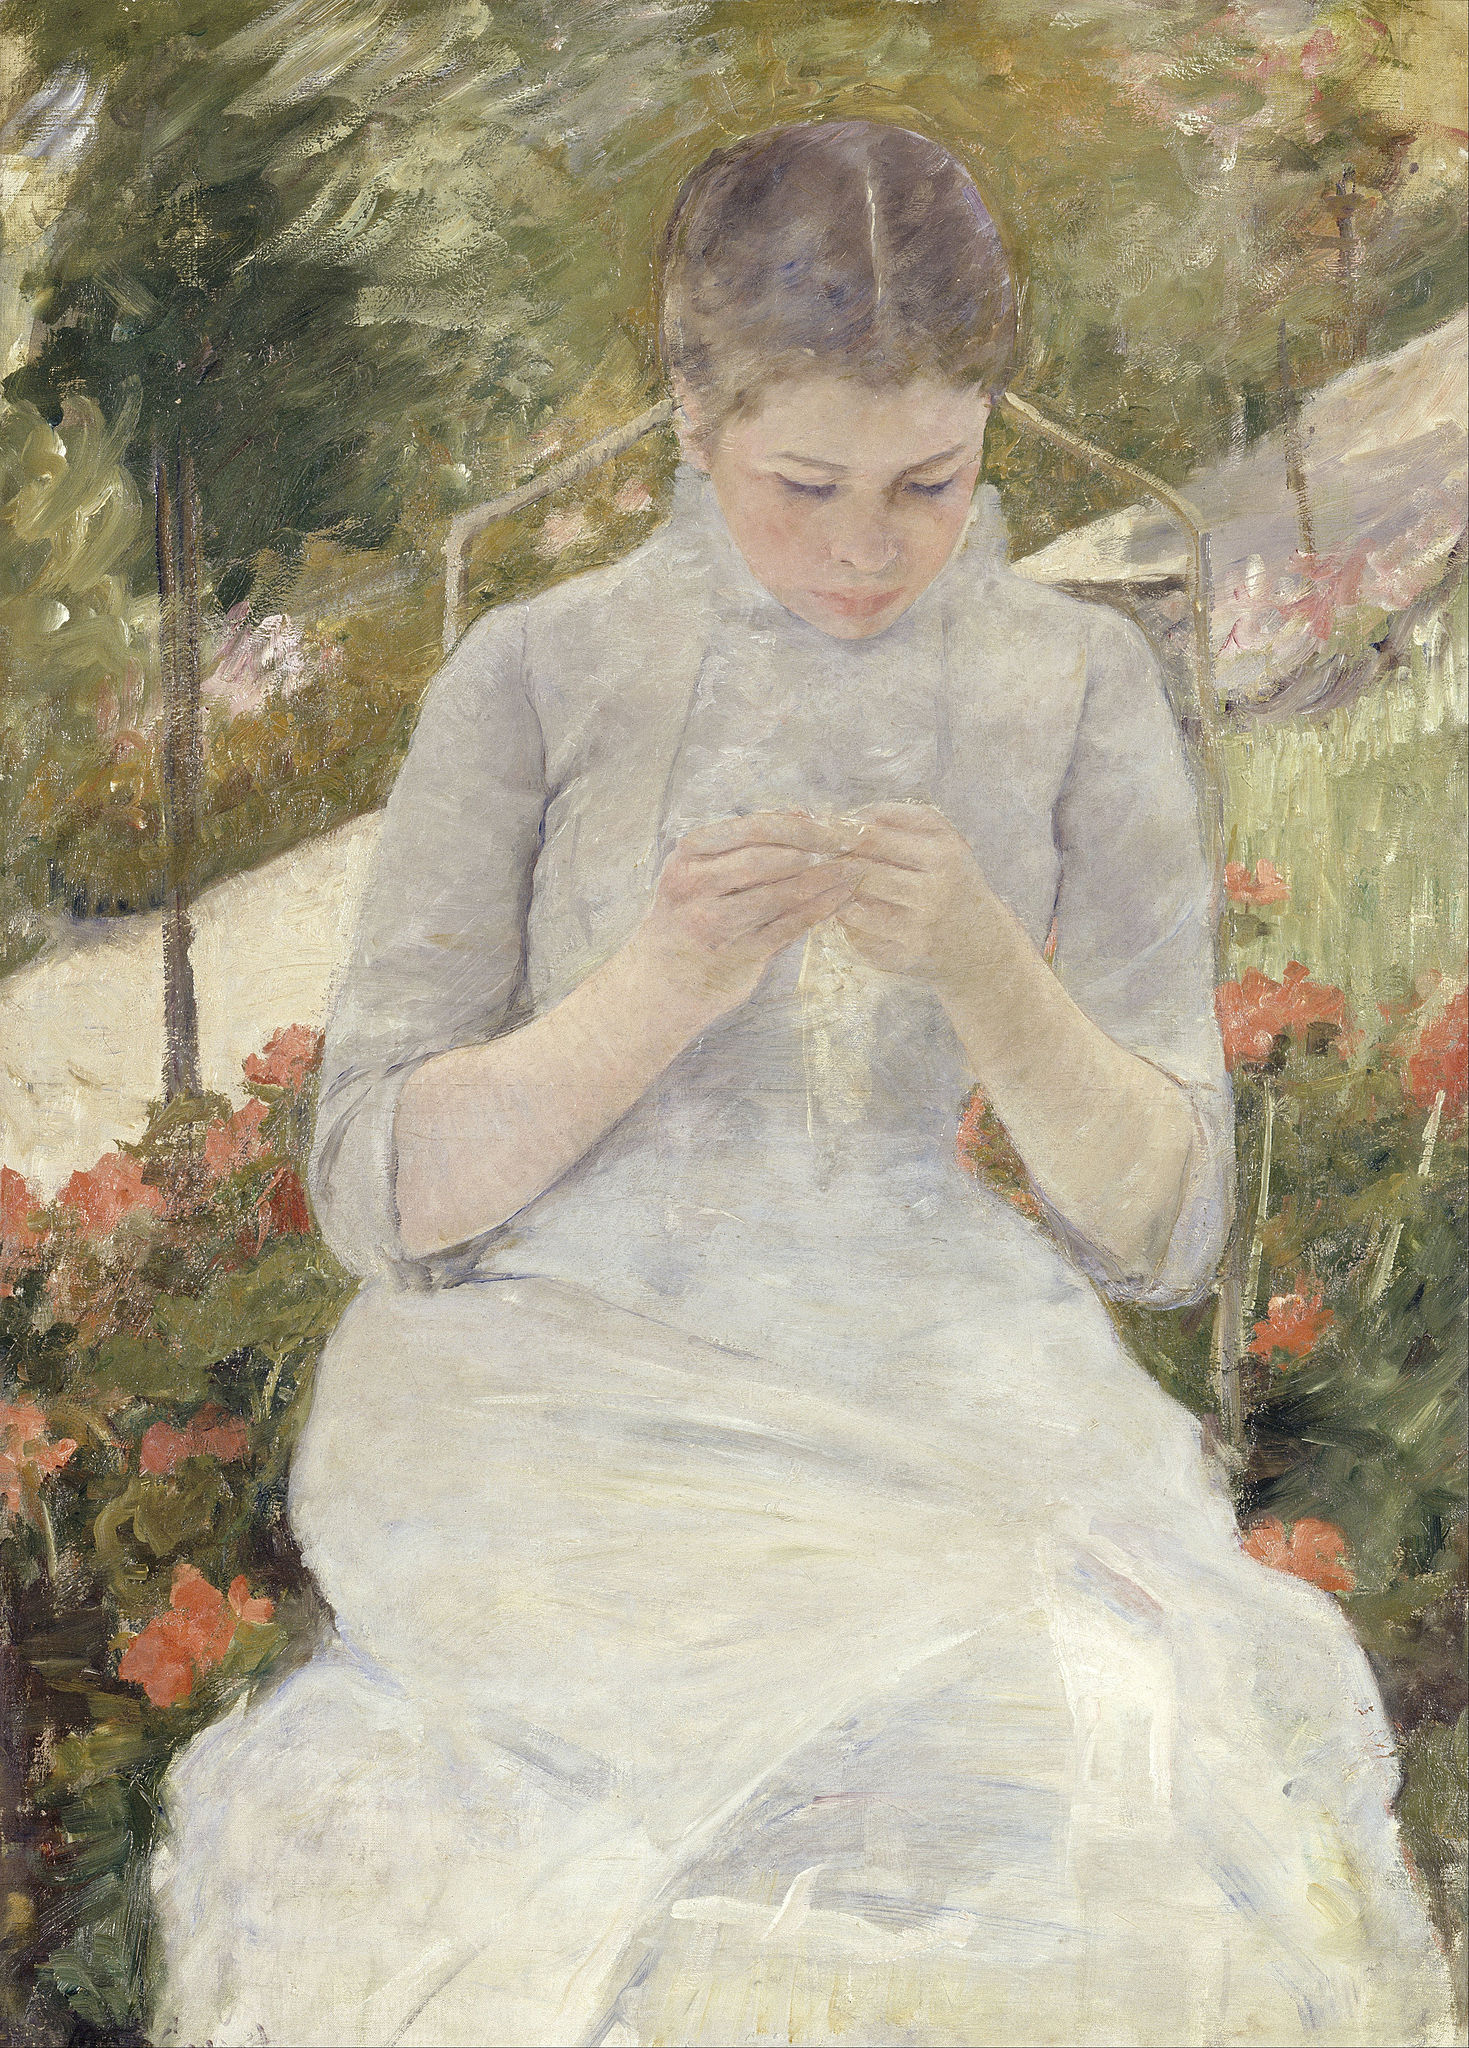 Dívka na zahradě by Mary Cassatt - 1880-1882 - 65 x 92 cm 